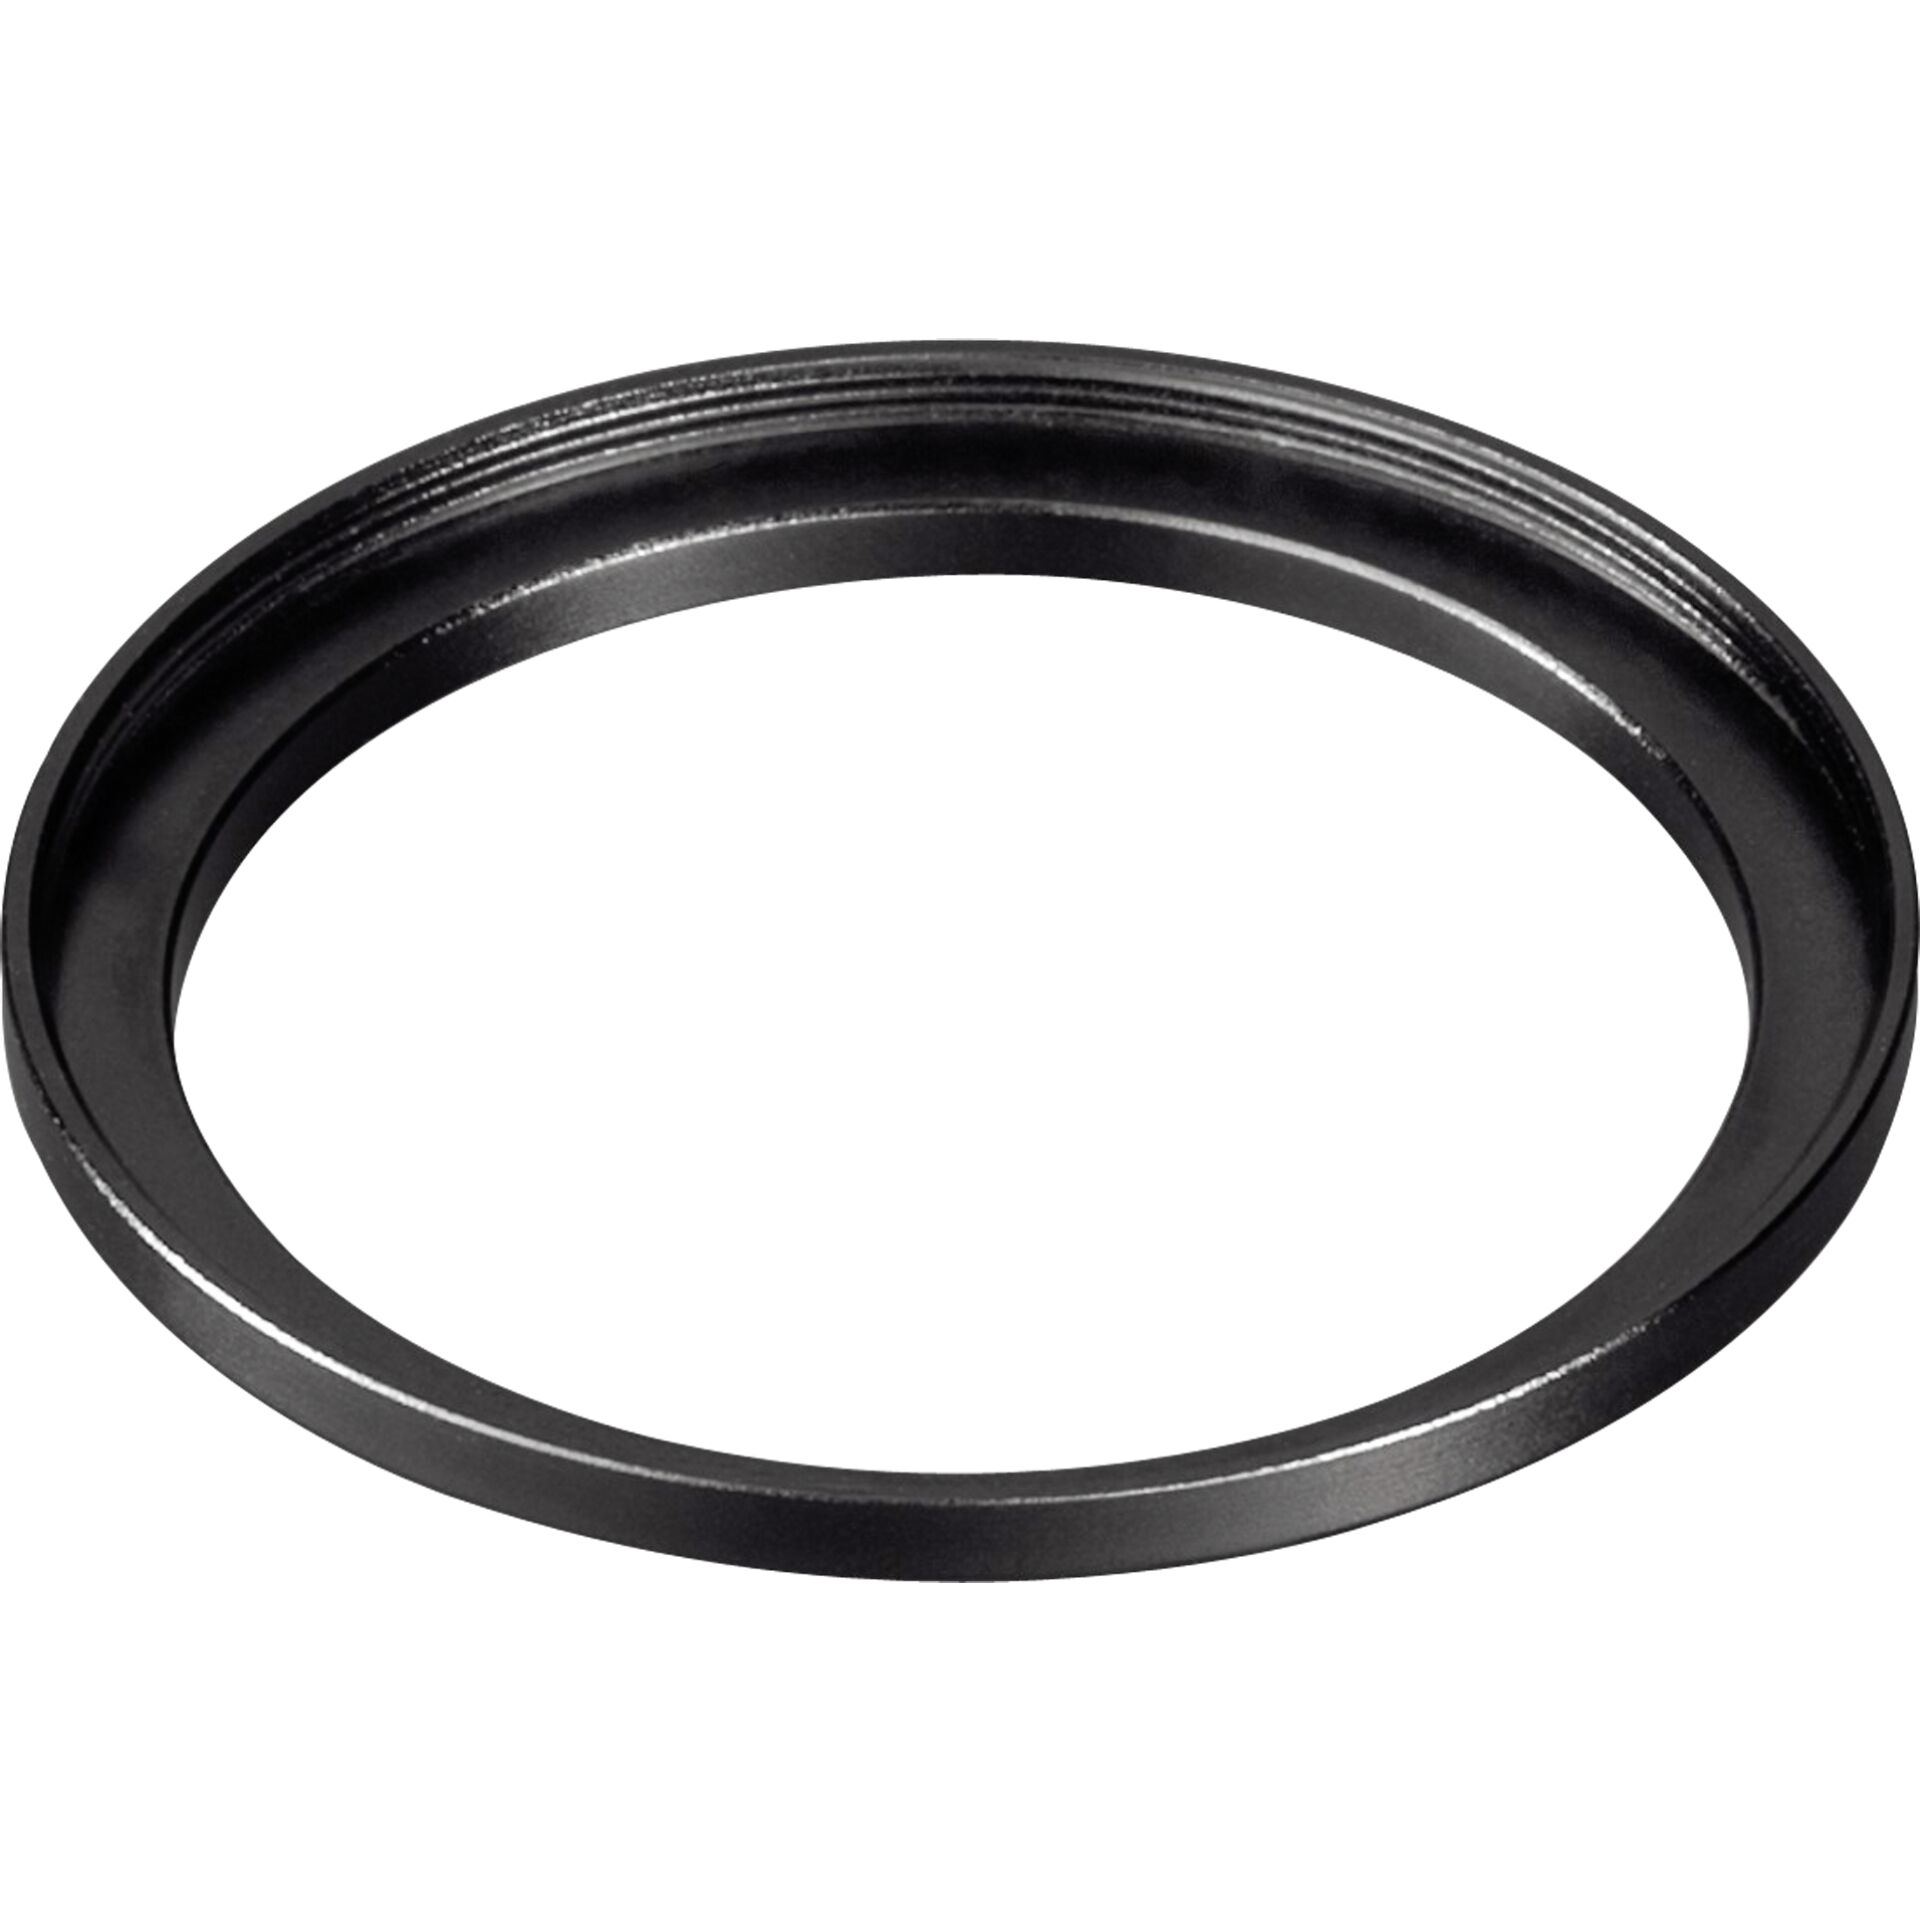 Hama Filter-Adapter-Ring Objektiv 46.0mm/Filter 52.0mm 